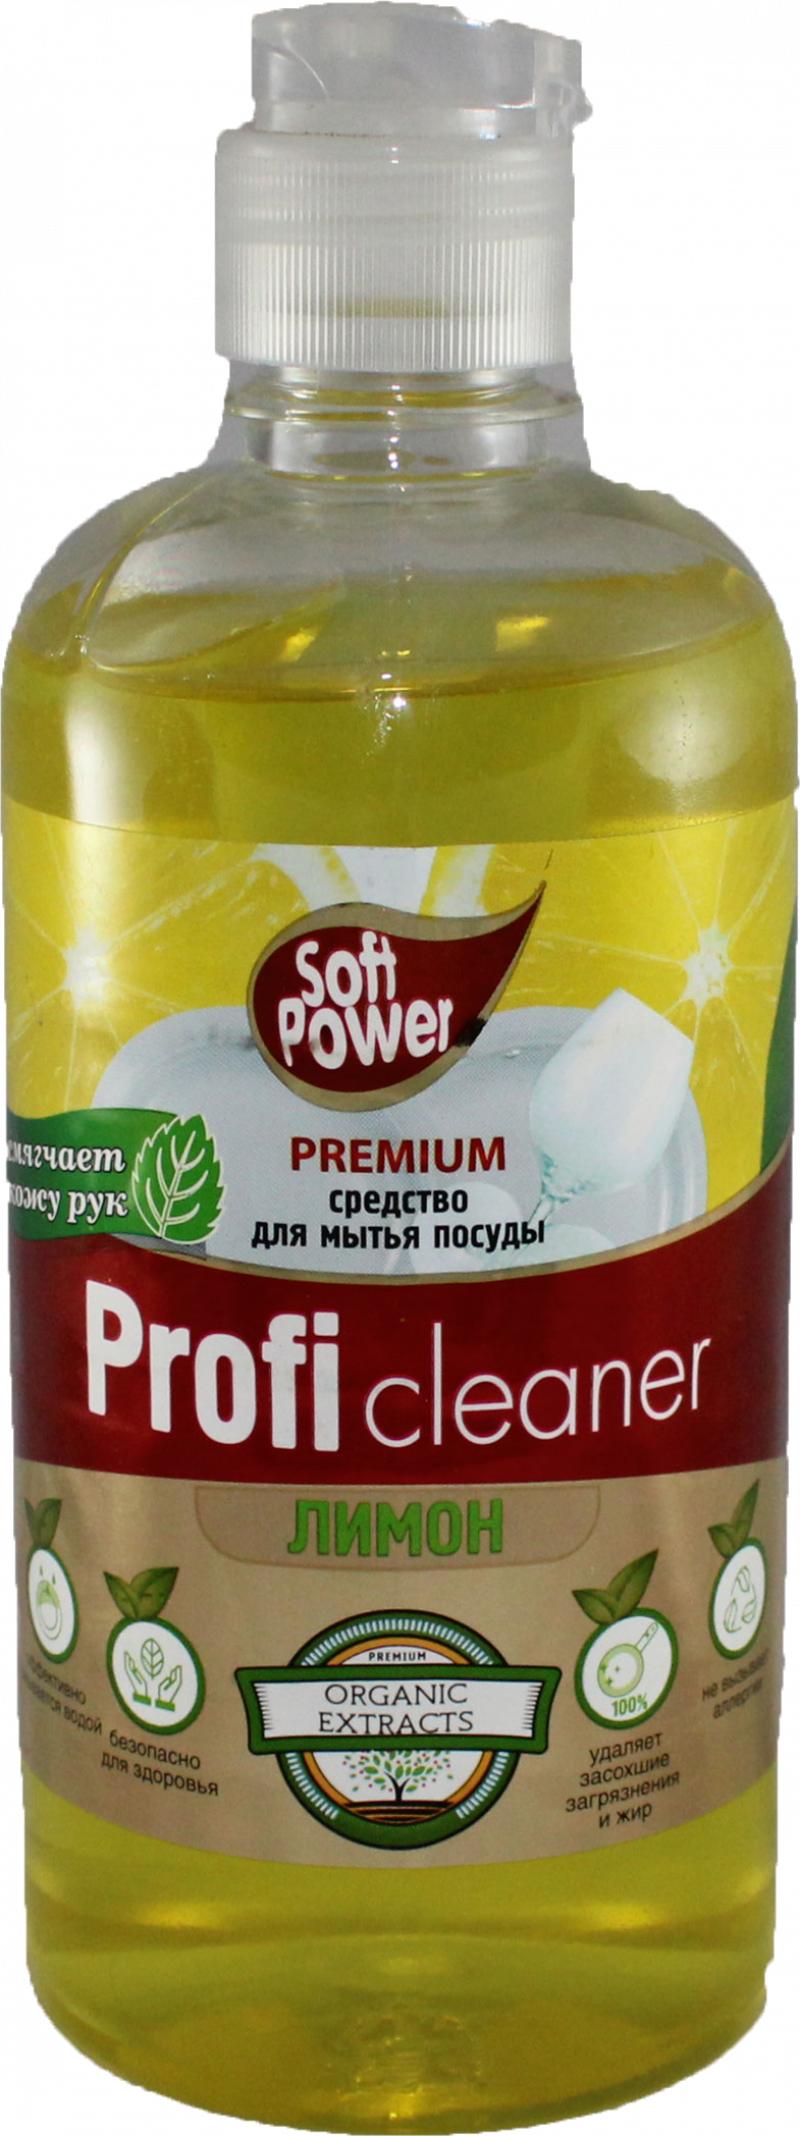 Средства для мытья посуды ТМ Soft power profi 500мл. лимон